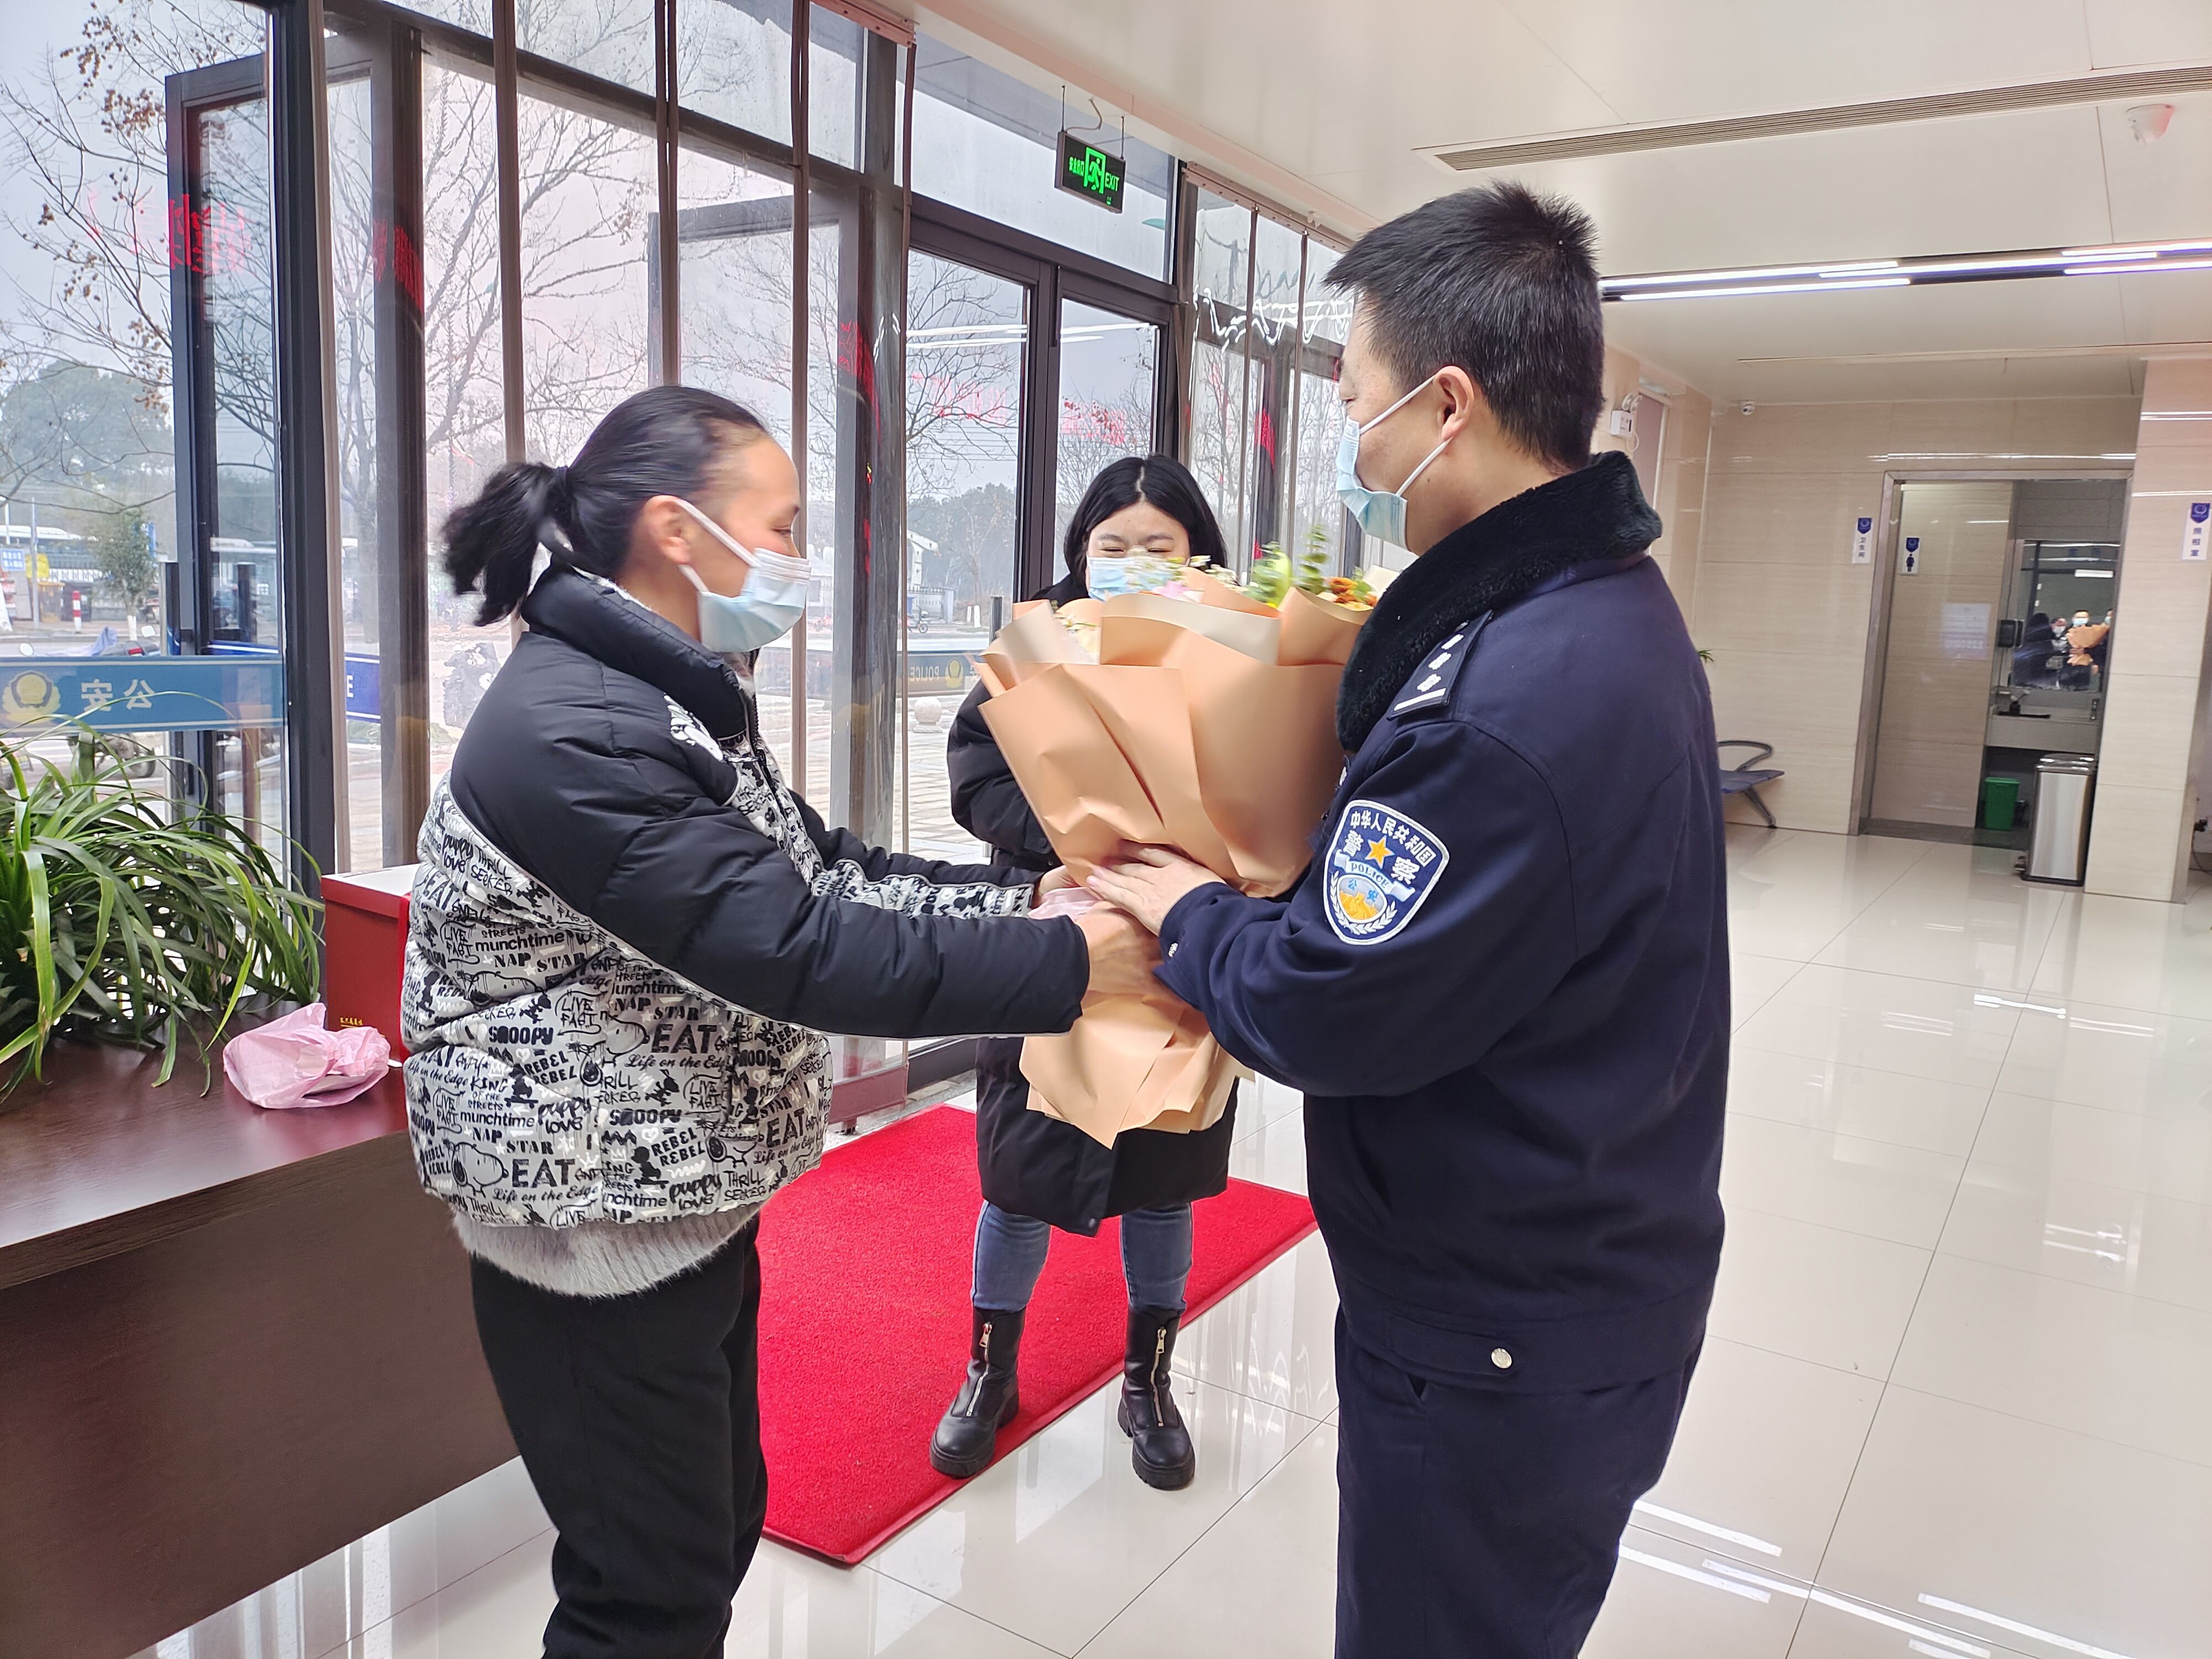 一家亲|湖州吴兴:110警察节 一份特殊的节日礼物